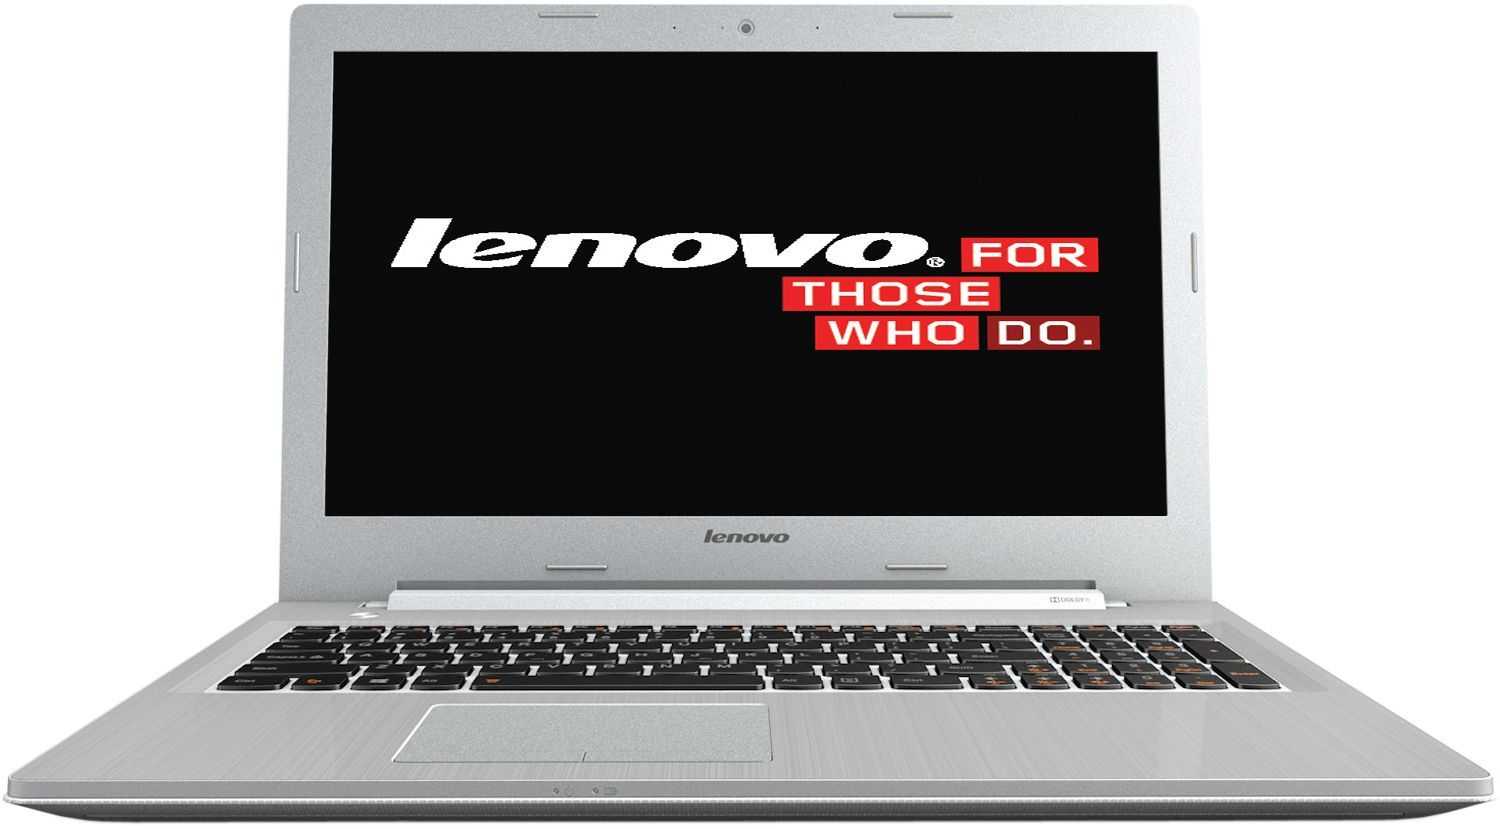 Ноутбук Lenovo IdeaPad Z510A (59-391997) - подробные характеристики обзоры видео фото Цены в интернет-магазинах где можно купить ноутбук Lenovo IdeaPad Z510A (59-391997)